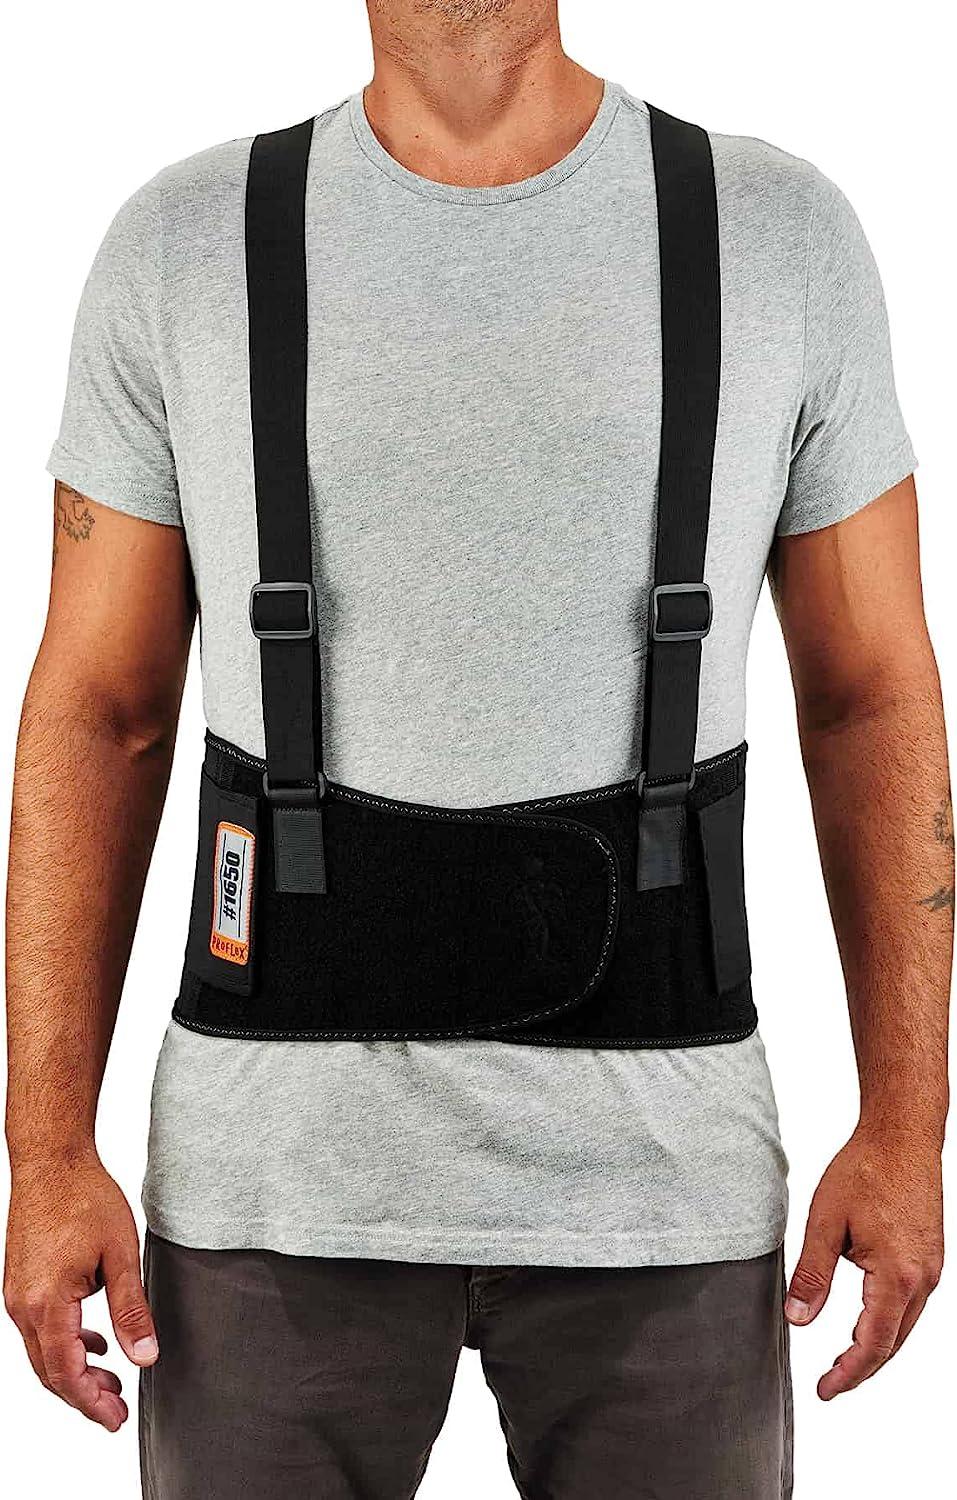 Hi-Vis Back Support Belt with Suspenders & Reflective Strips